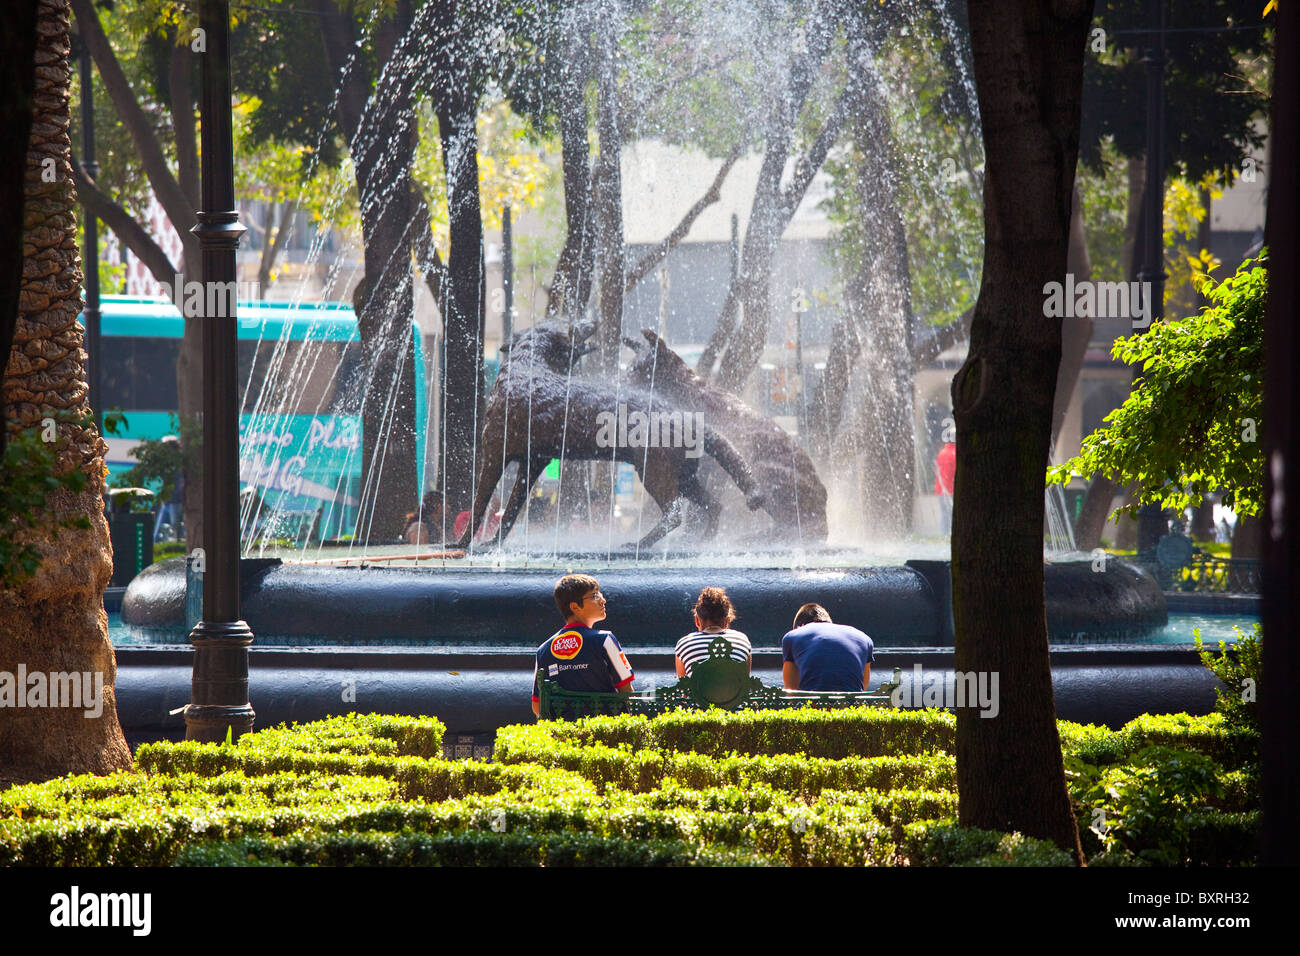 Jardín Centenario, Plaza Hidalgo, Coyoacan, Mexico City, Mexico Stock Photo